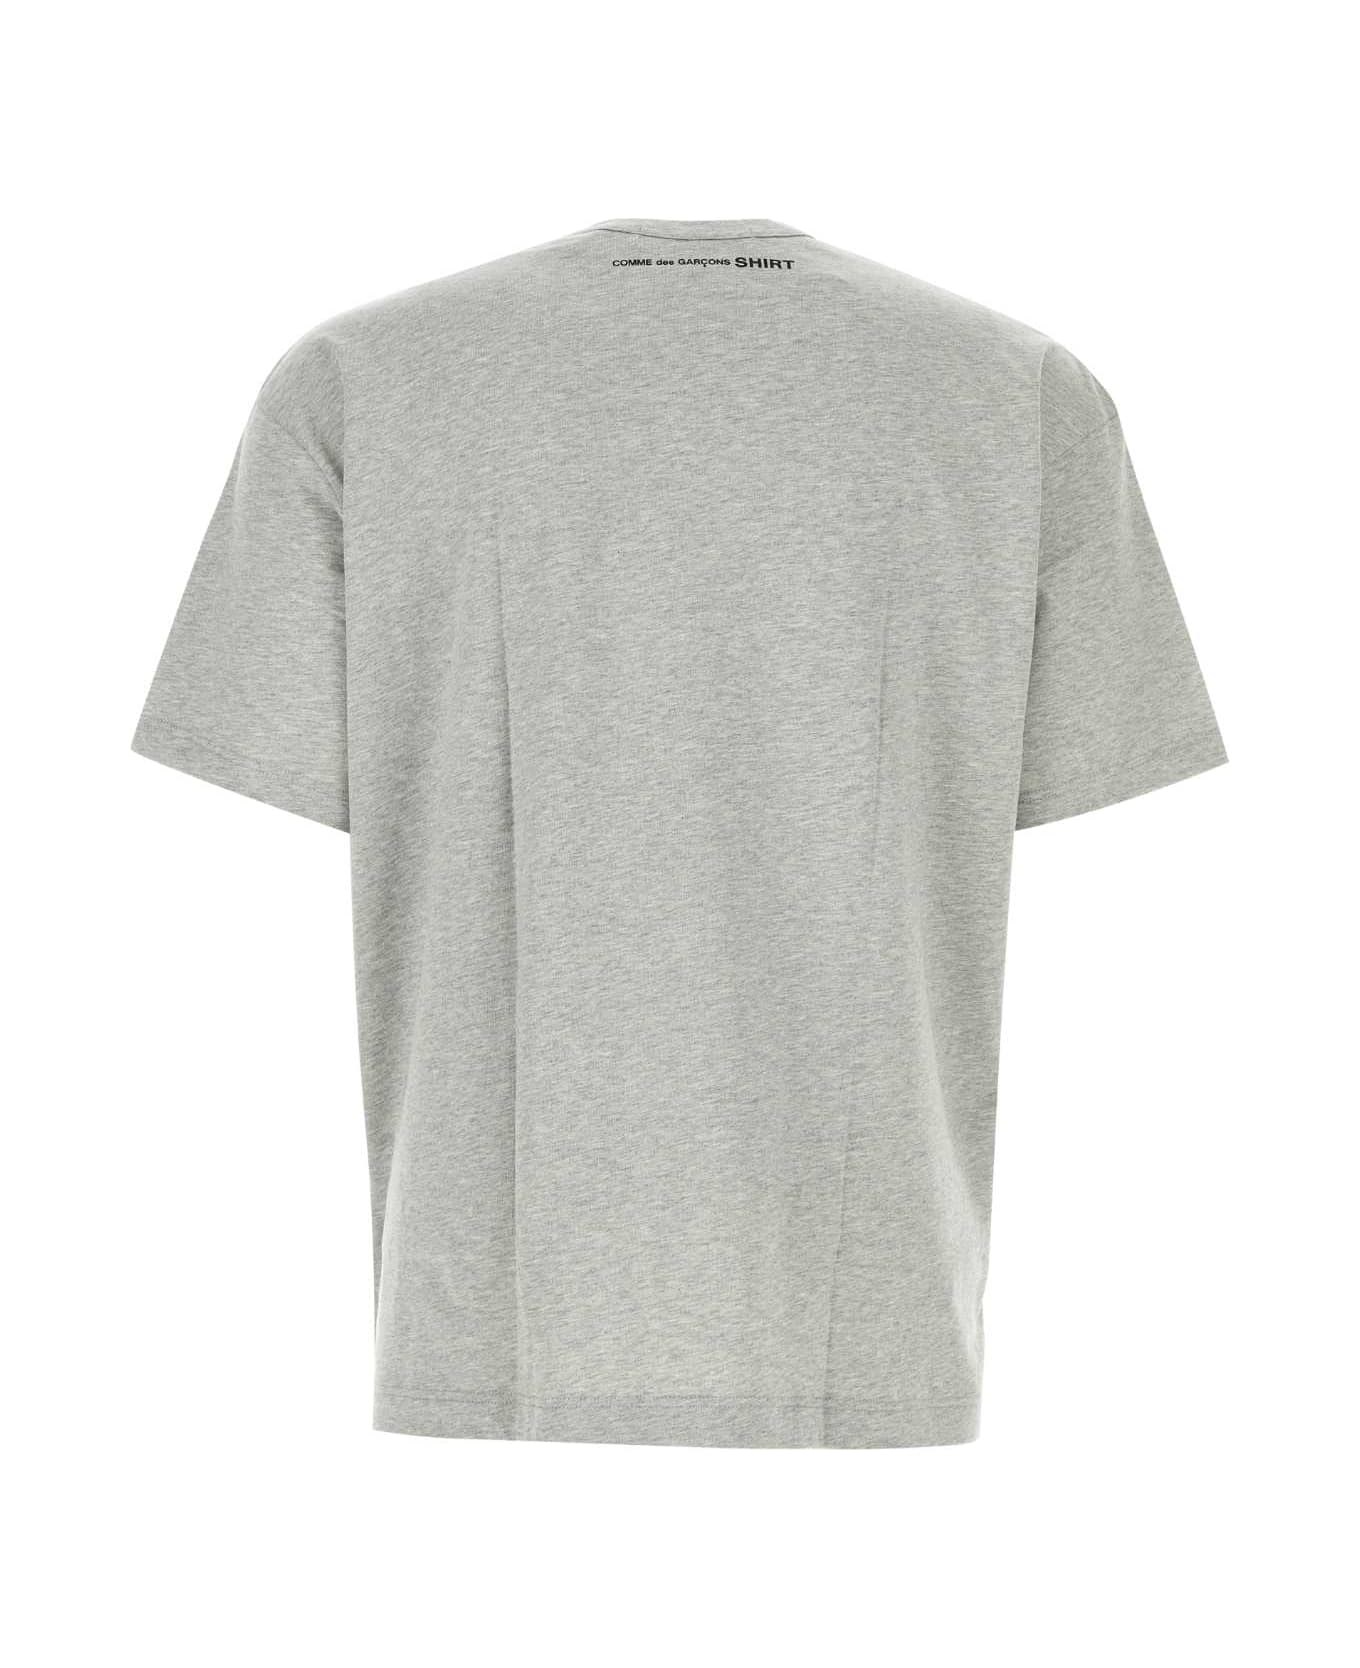 Comme des Garçons Melange Grey Cotton T-shirt - TOPGREY